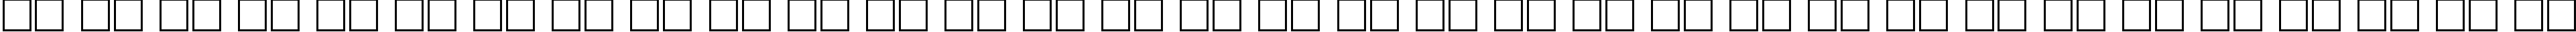 Пример написания русского алфавита шрифтом Dayton Regular